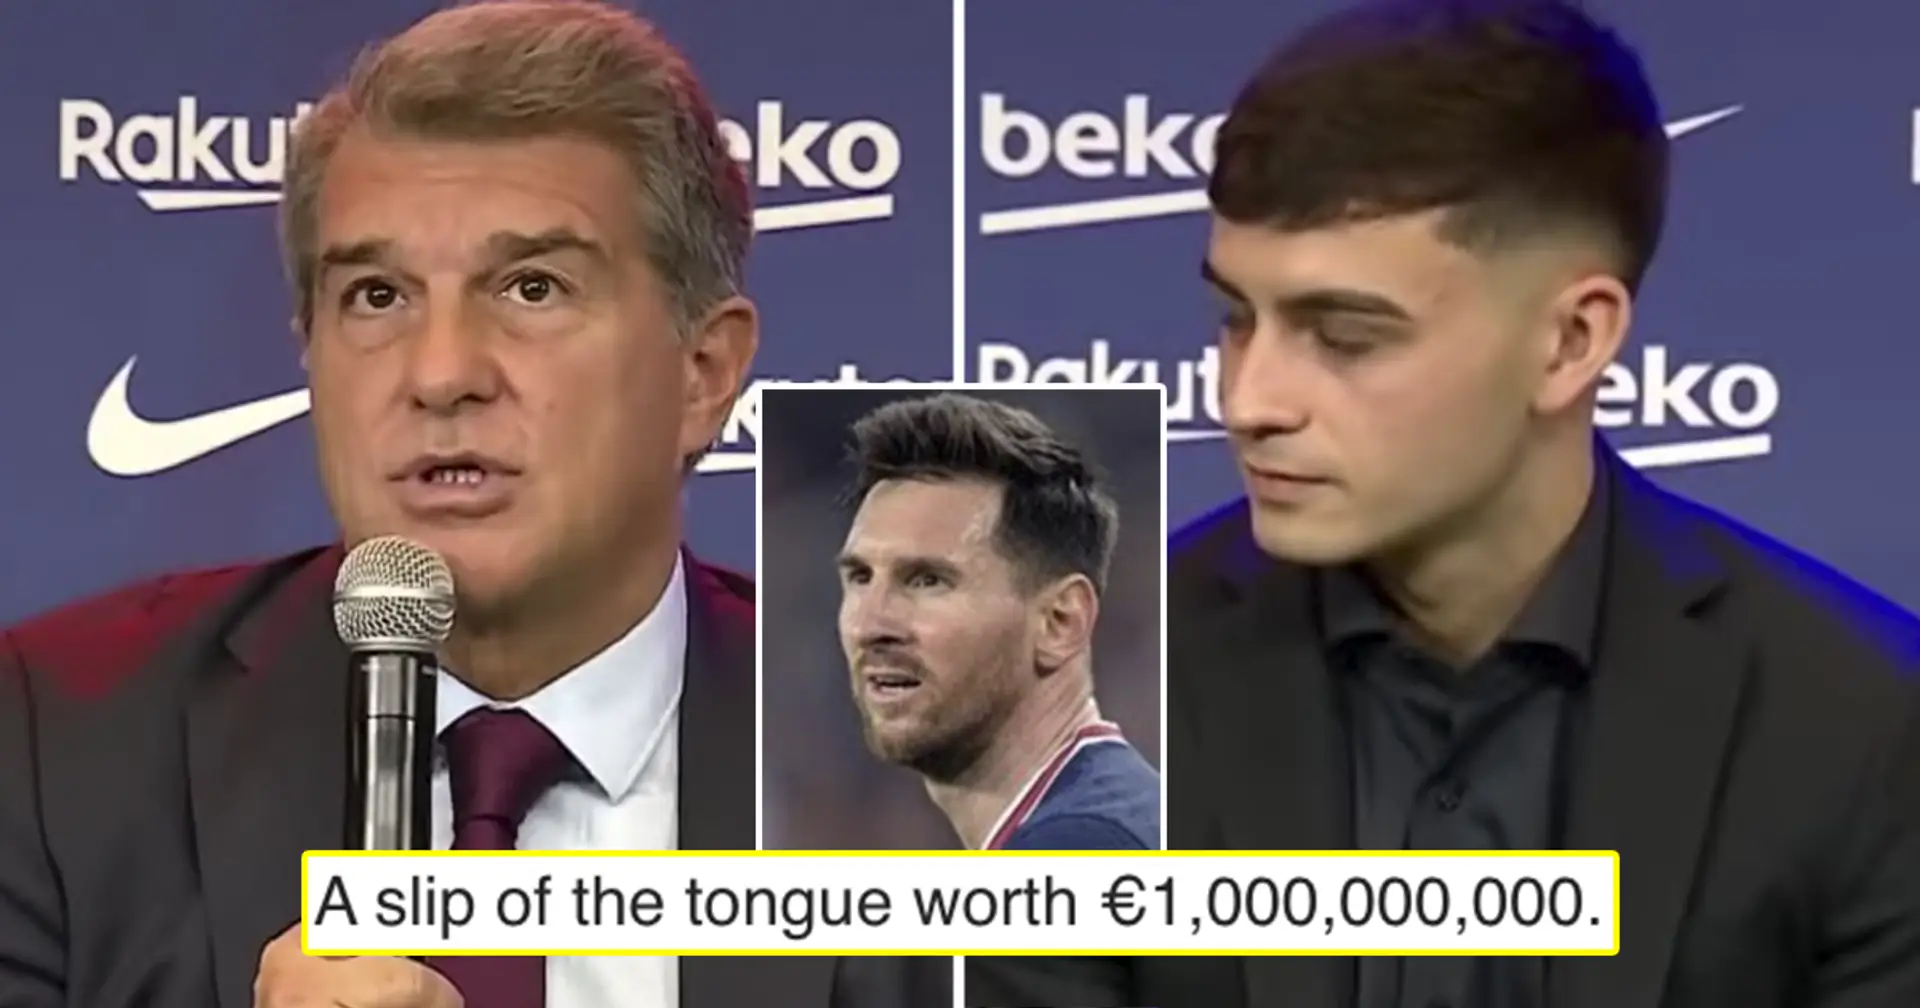 'Si yo fuera Pedri, volvería a leer el contrato': los fans reaccionan a que Laporta llame erróneamente al joven 'Messi' en la rueda de prensa